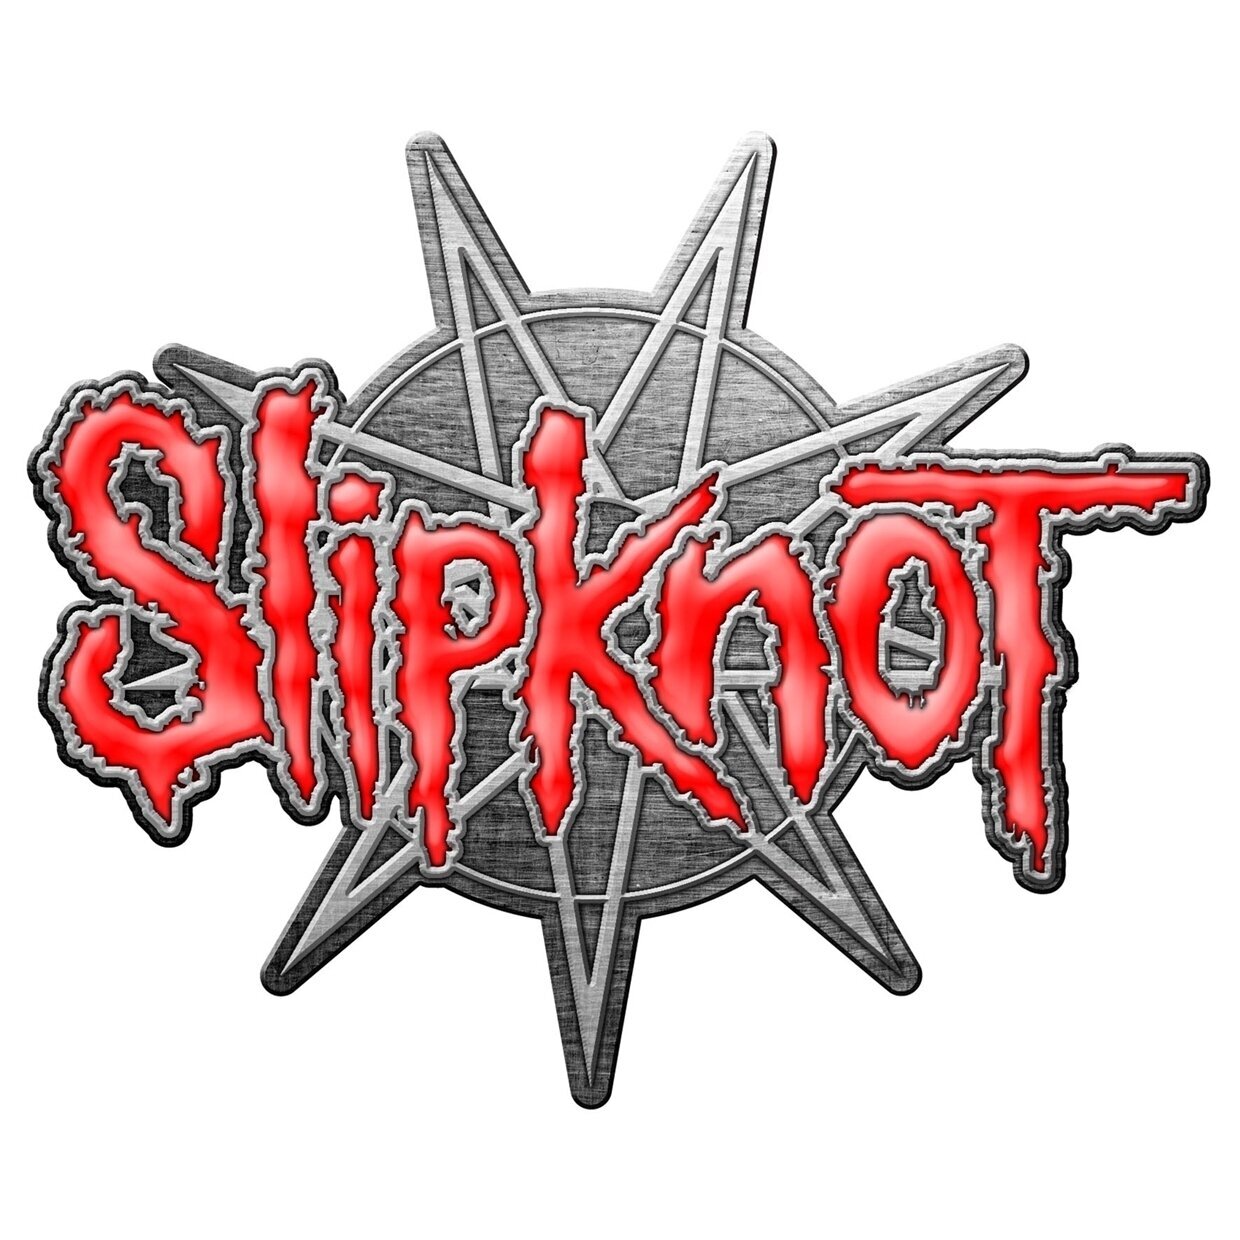 Odznak Slipknot 9 Pointed Star Badge Metallic Odznak